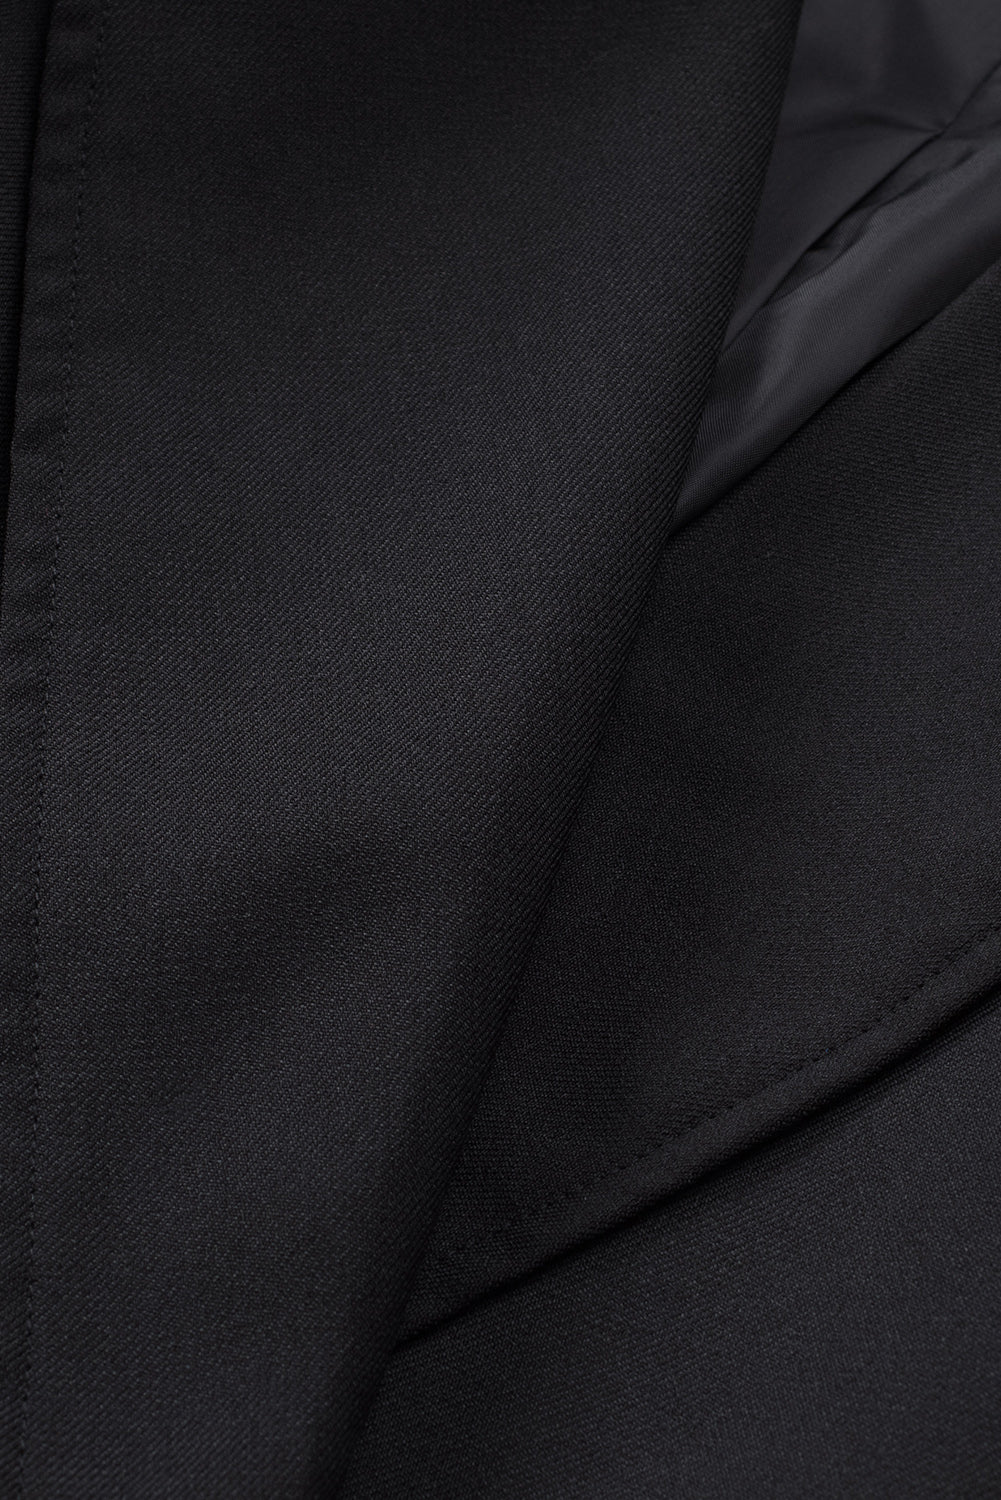 Crni sako s ovratnikom na rever i džepom